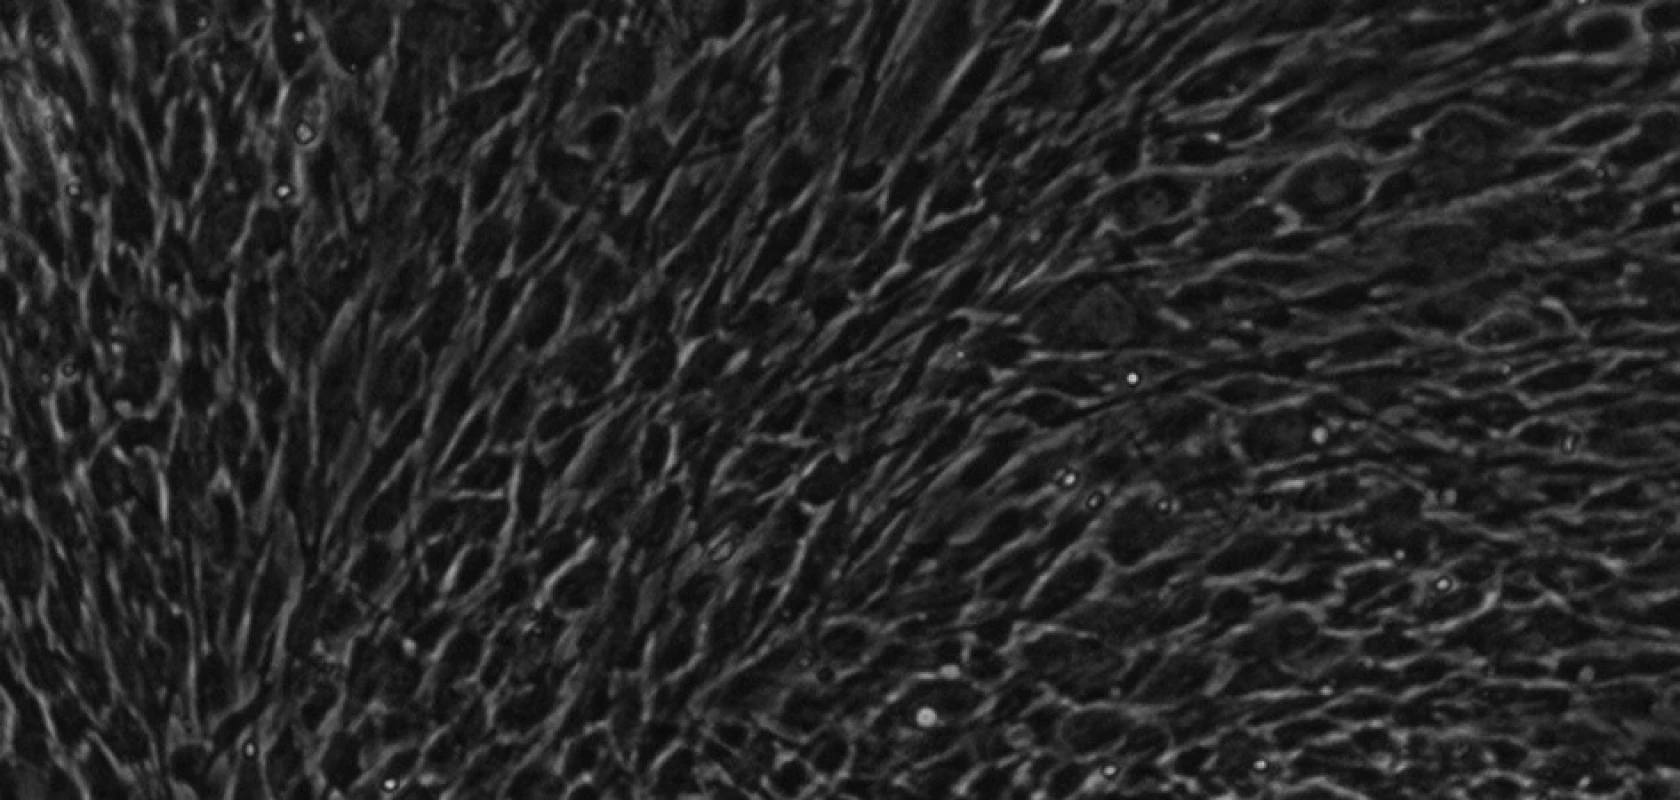 Kmenové buňky zubní pulpy izolované ze subodontoblastického kompartmentu při 30. pasáži. Buňky jsou více okrouhlé. KBZP mají v průměru 12 - 18 μm.Mikroskop s fázovým kontrastem, zvětšení 200x.